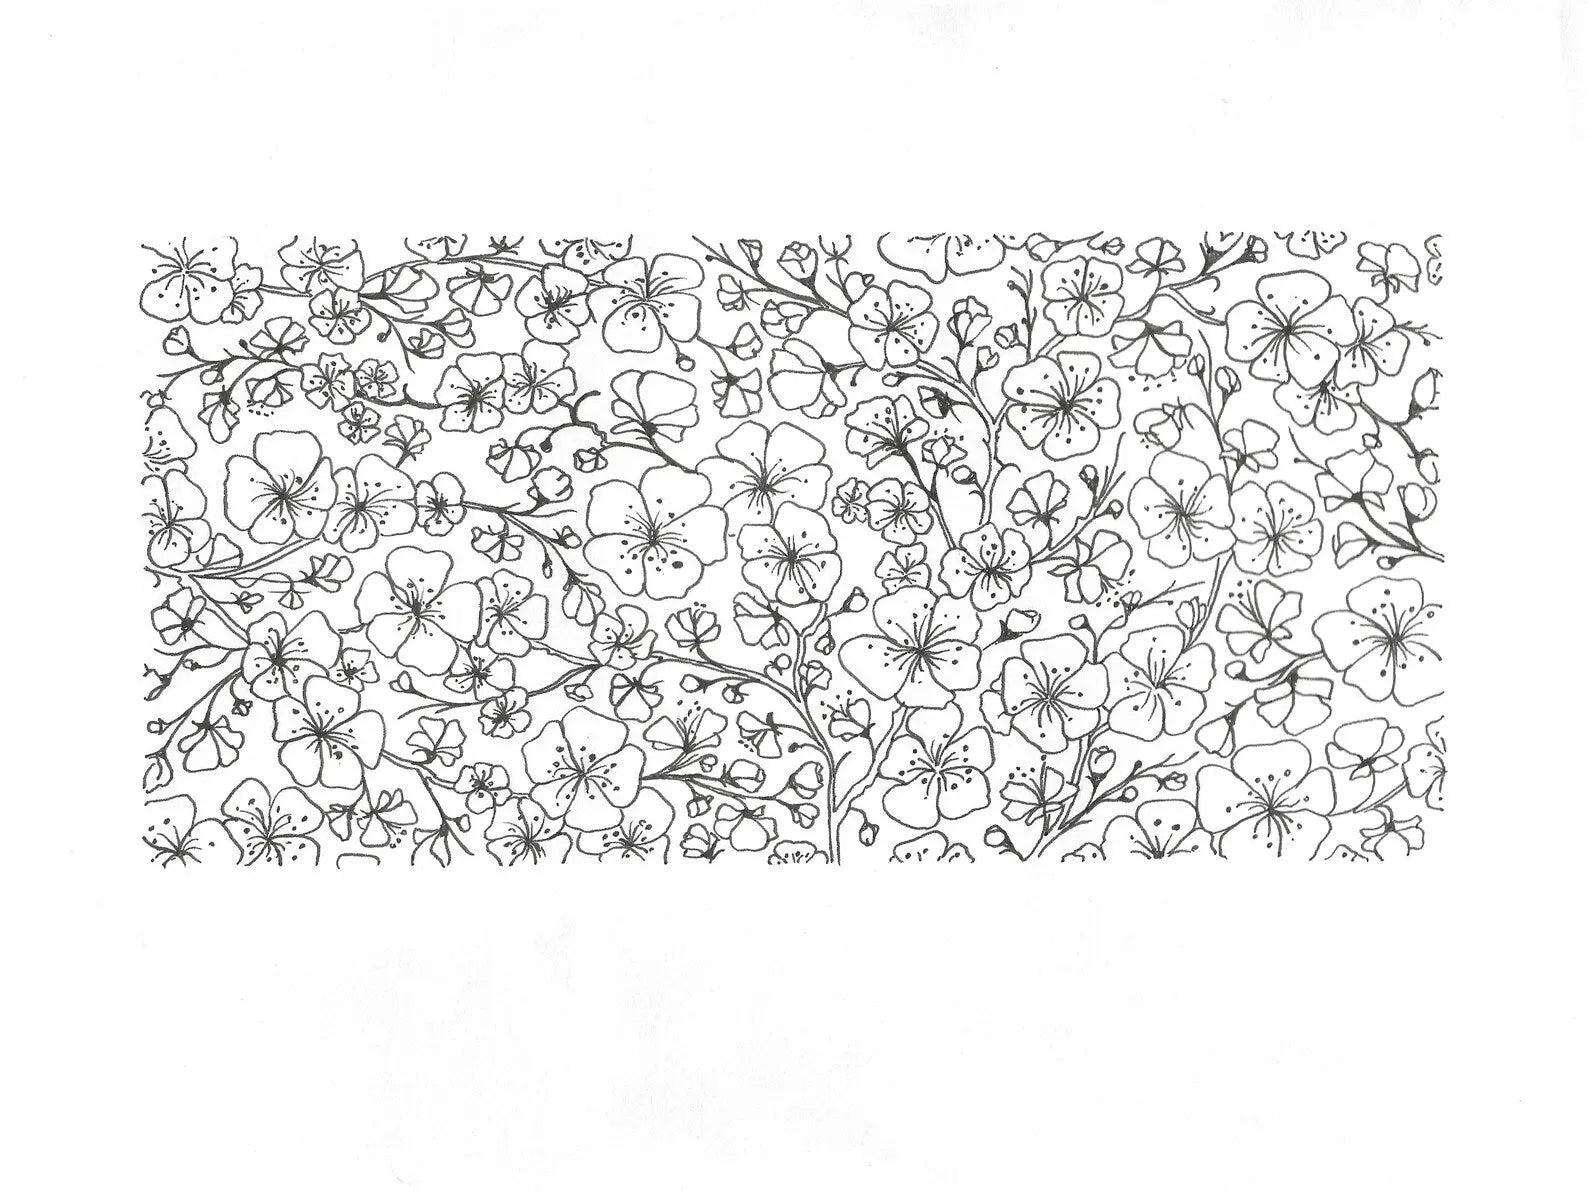 Carnet A6 CERISIER du Japon - 48 pages blanches -Papeterie japonaise fleurie Lena's Paper